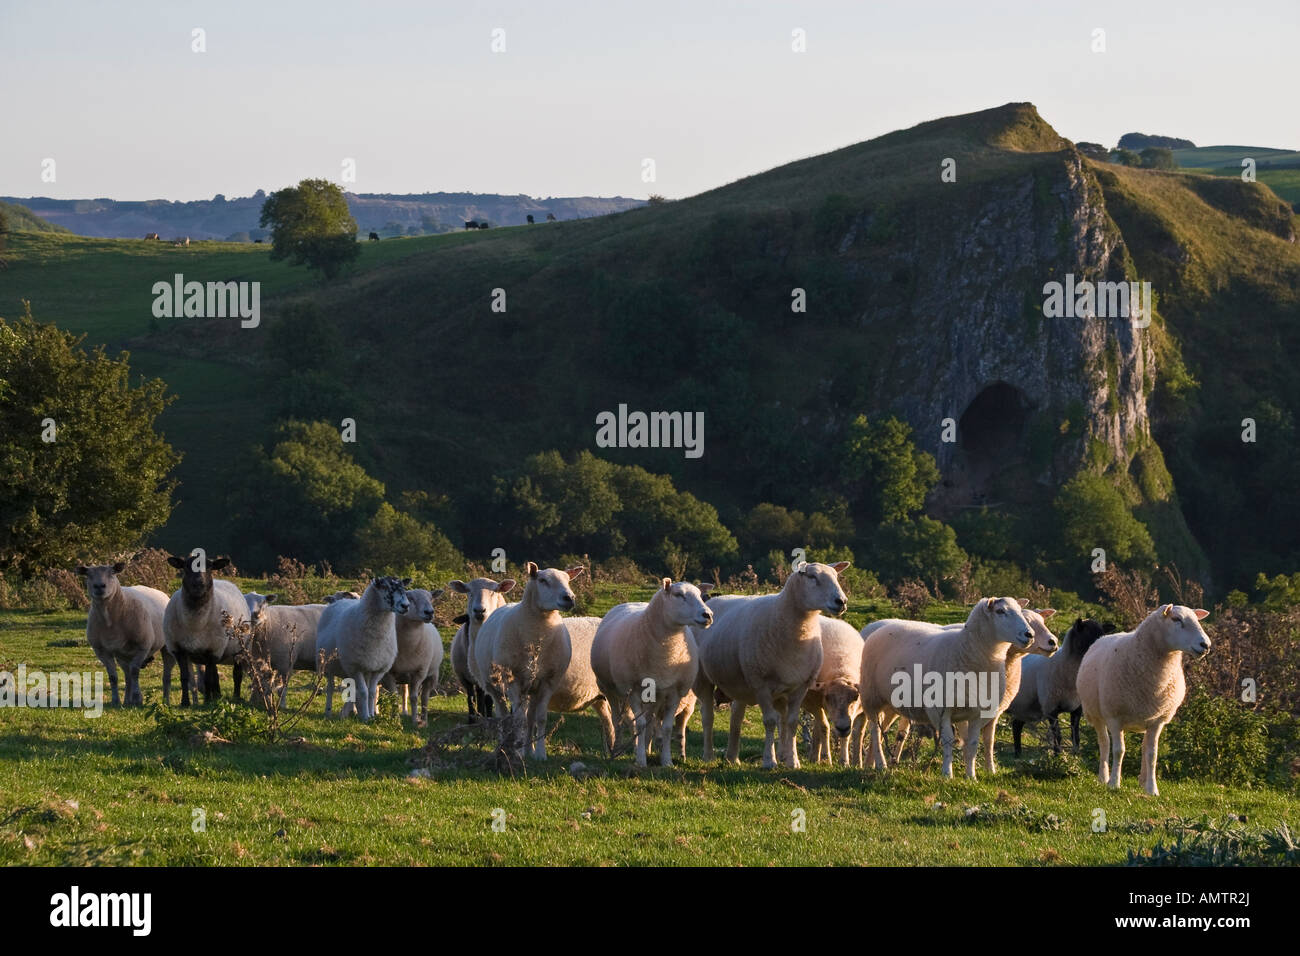 Troupeau de moutons près de Thor's Cave, vallée du collecteur, parc national de Peak District, Staffordshire Banque D'Images